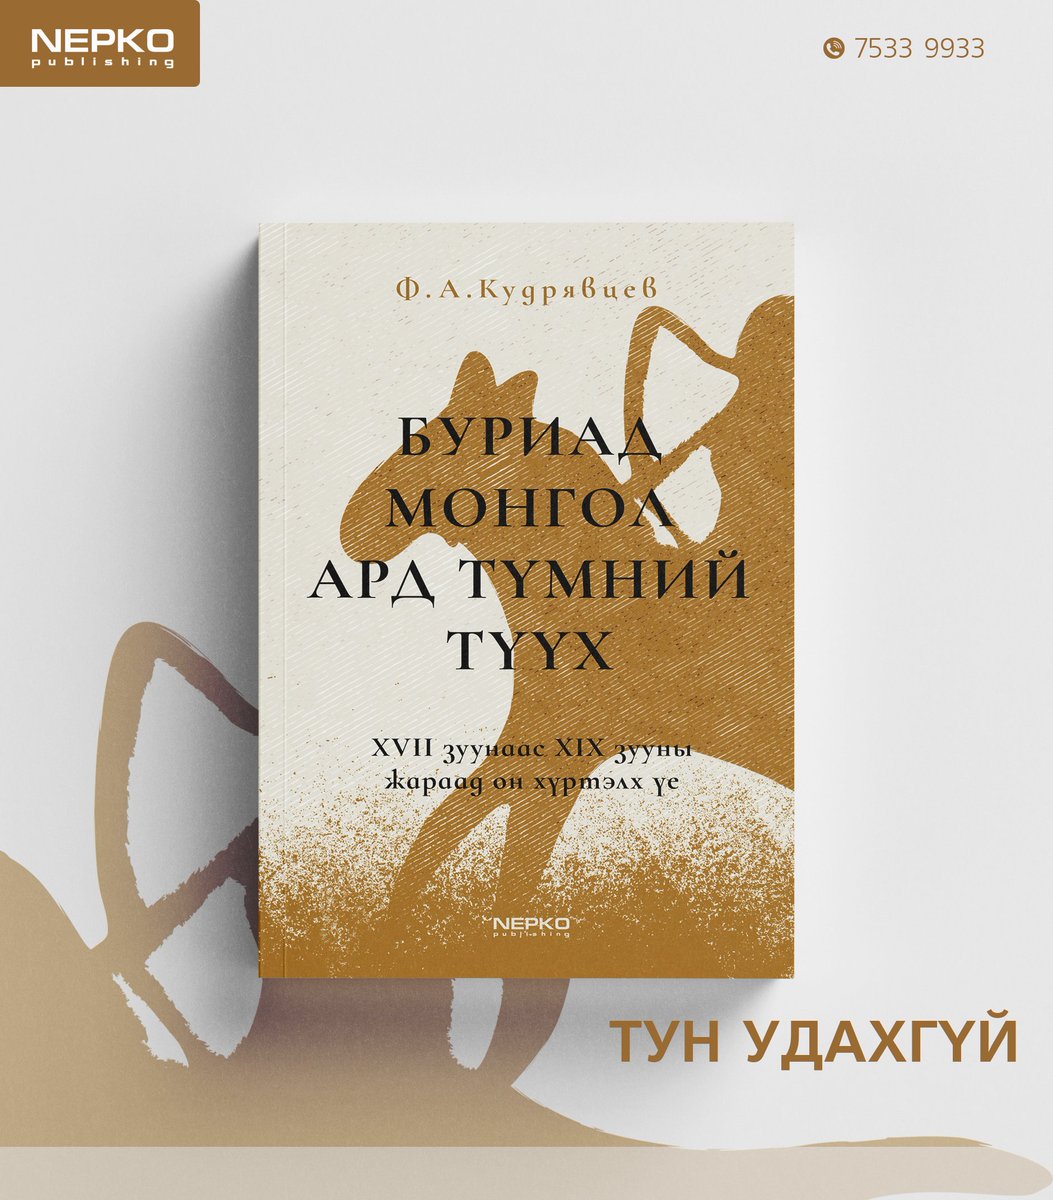 #Шинэ_ном БУРИАД МОНГОЛ АРД ТҮМНИЙ ЗАРИМ ТҮҮХ 1940 онд Ленинградад 6 мянган хувь хэвлэгдсэн эл ном тэр чигээрээ алга болон түүхийн дурсгал төдий болсныг Буриад монголын албан ёсны түүх шал өөр болсонтой холбож ойлгох нь зүйтэй. Нийтлэлийн дэлгэрэнгүйг: baabar.mn/art.../buriad-…